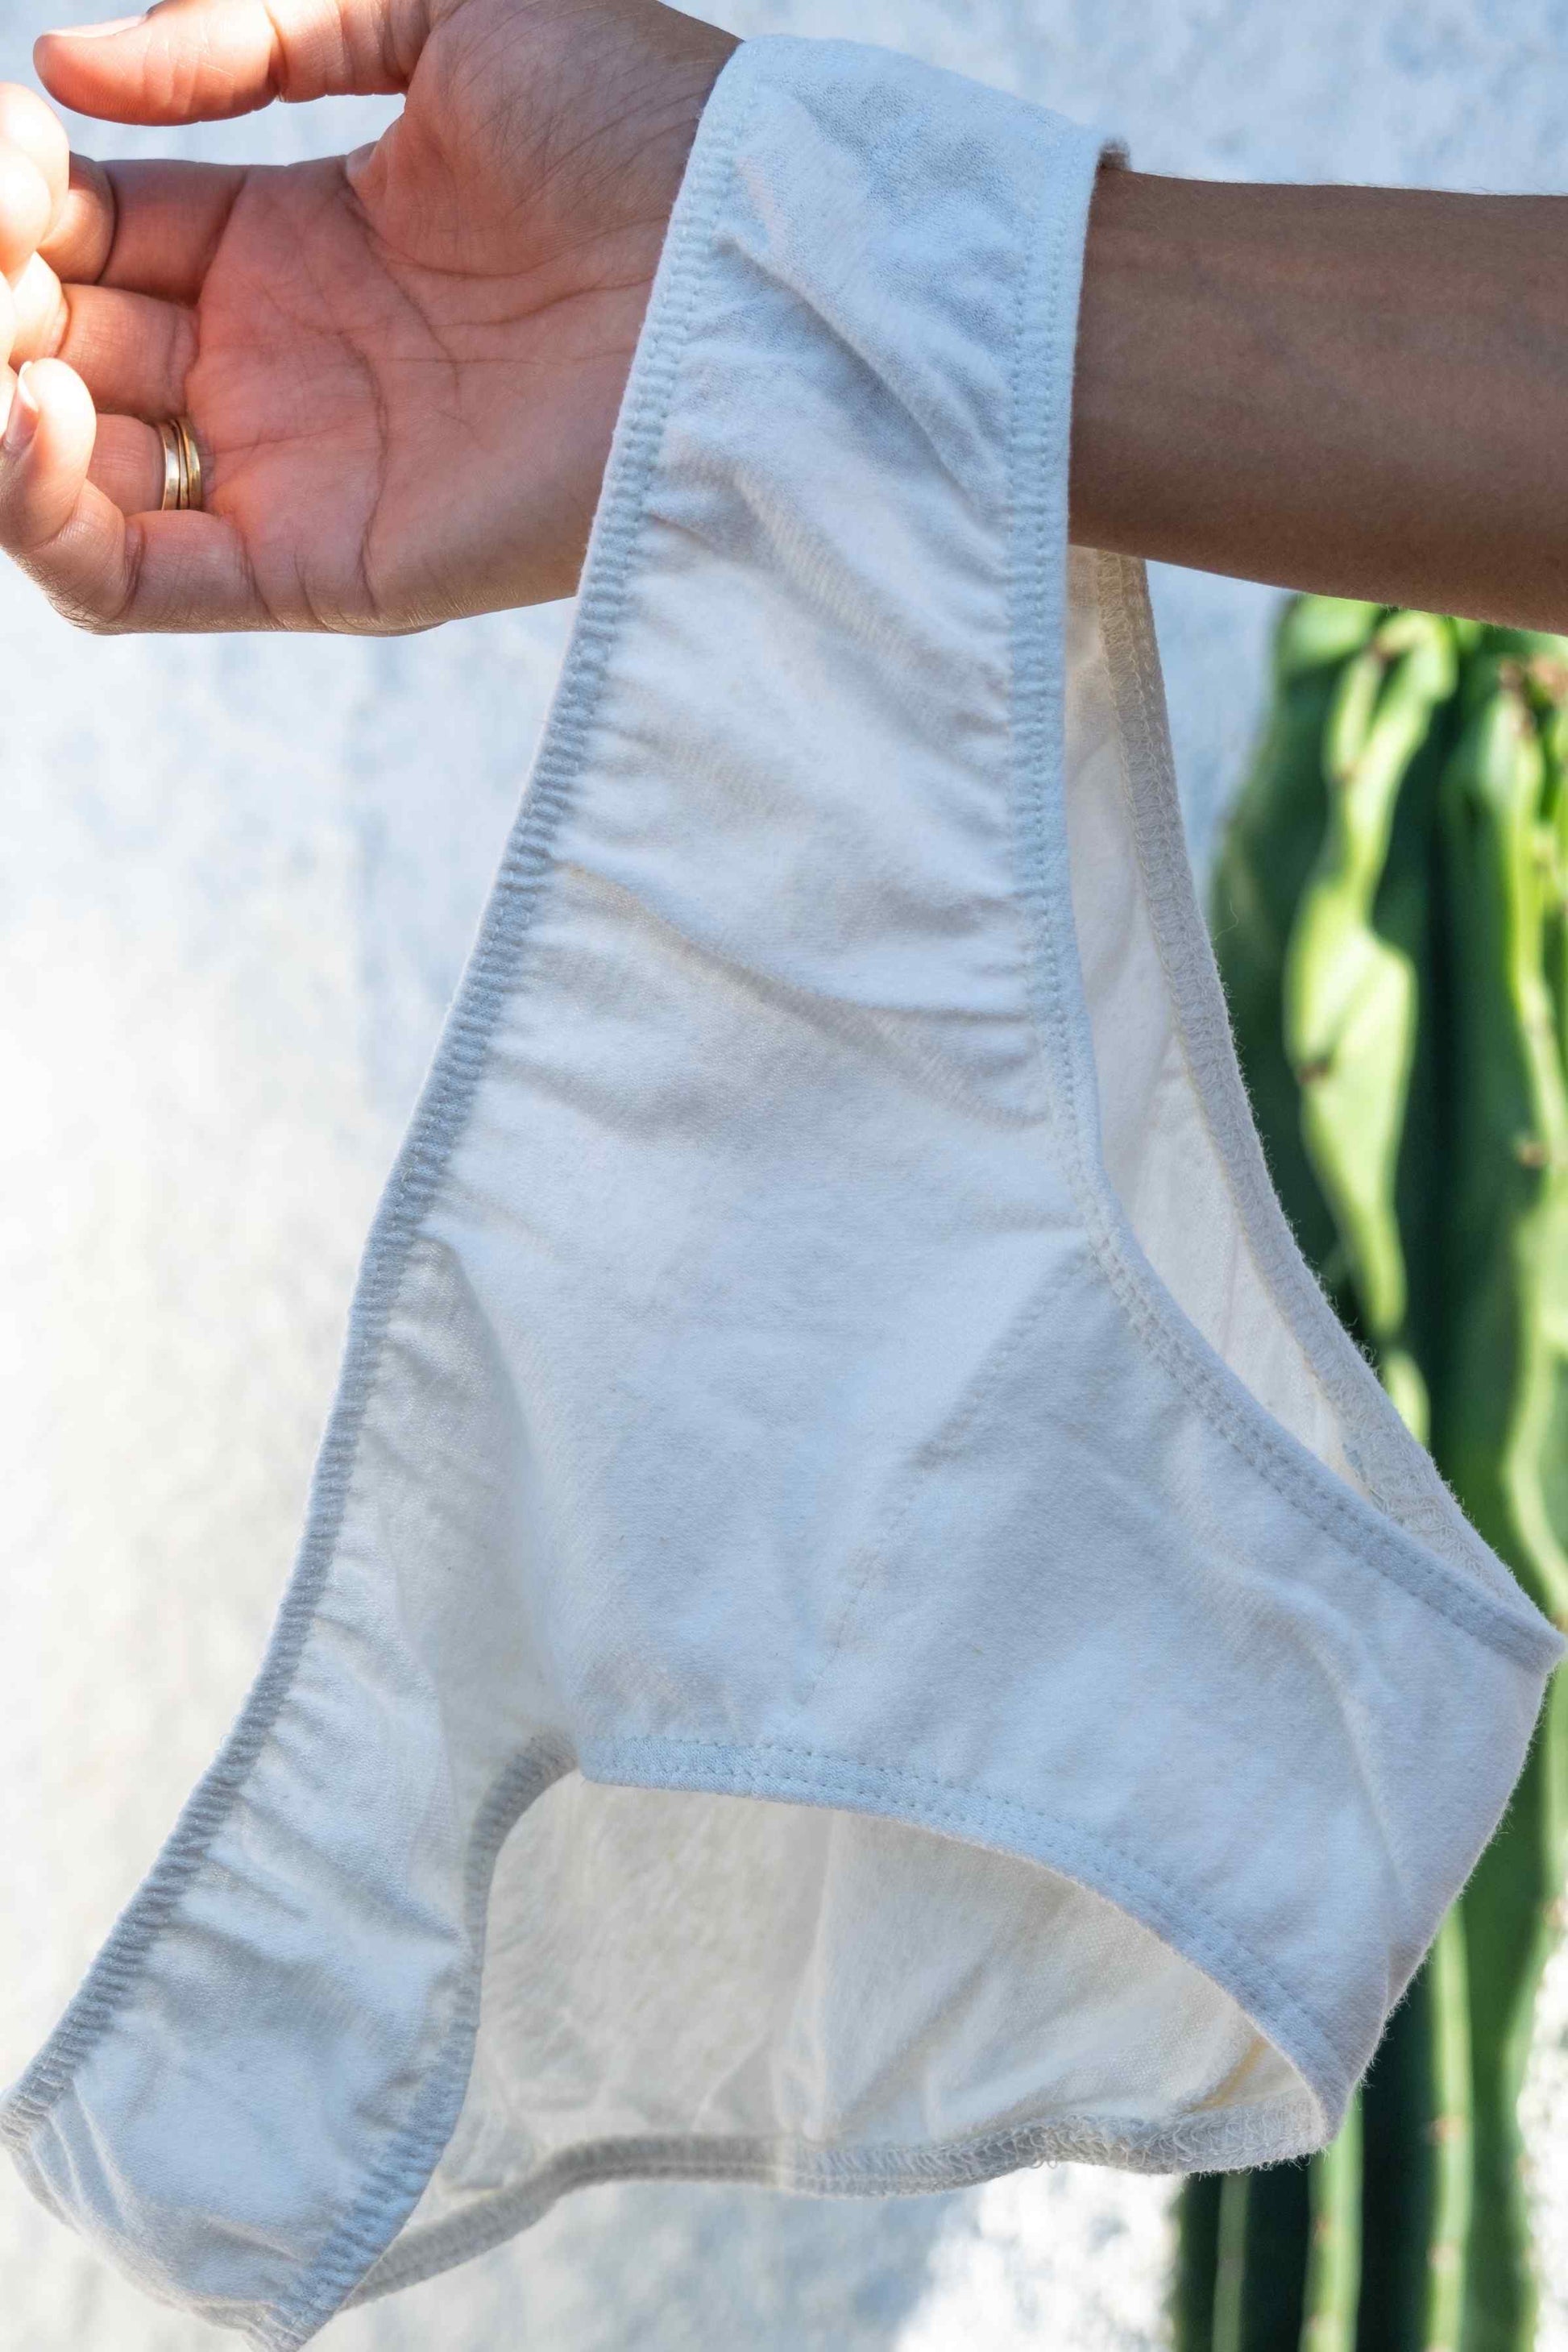 11 Best Hemp and Organic Cotton Underwear of 2023